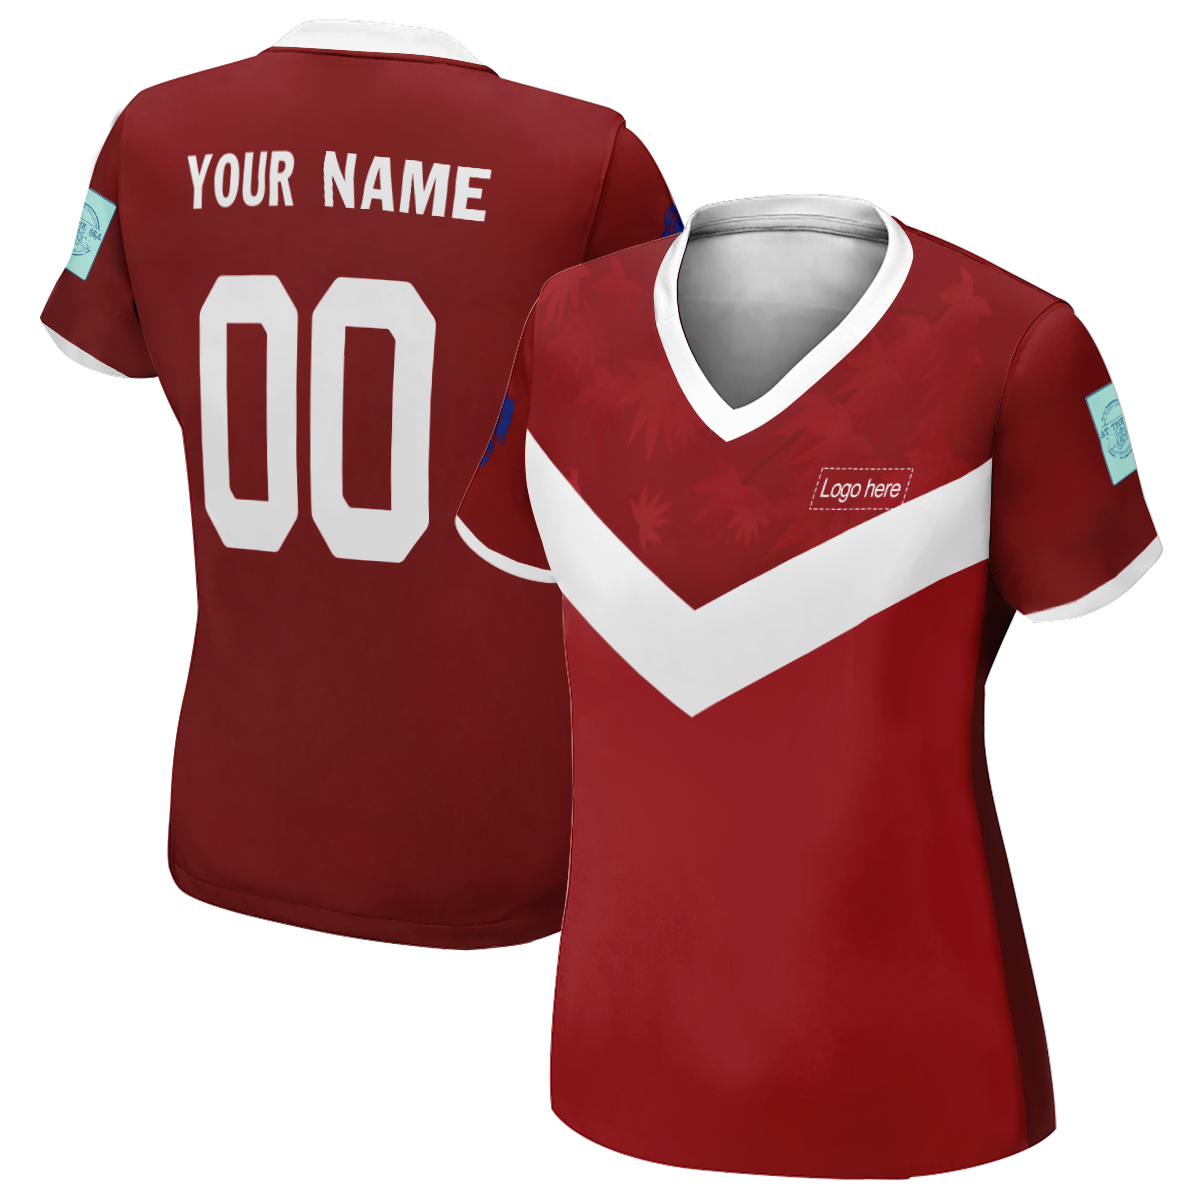 이름이 있는 여성용 뒤집을 수 있는 캐나다 월드컵 맞춤형 축구 유니폼